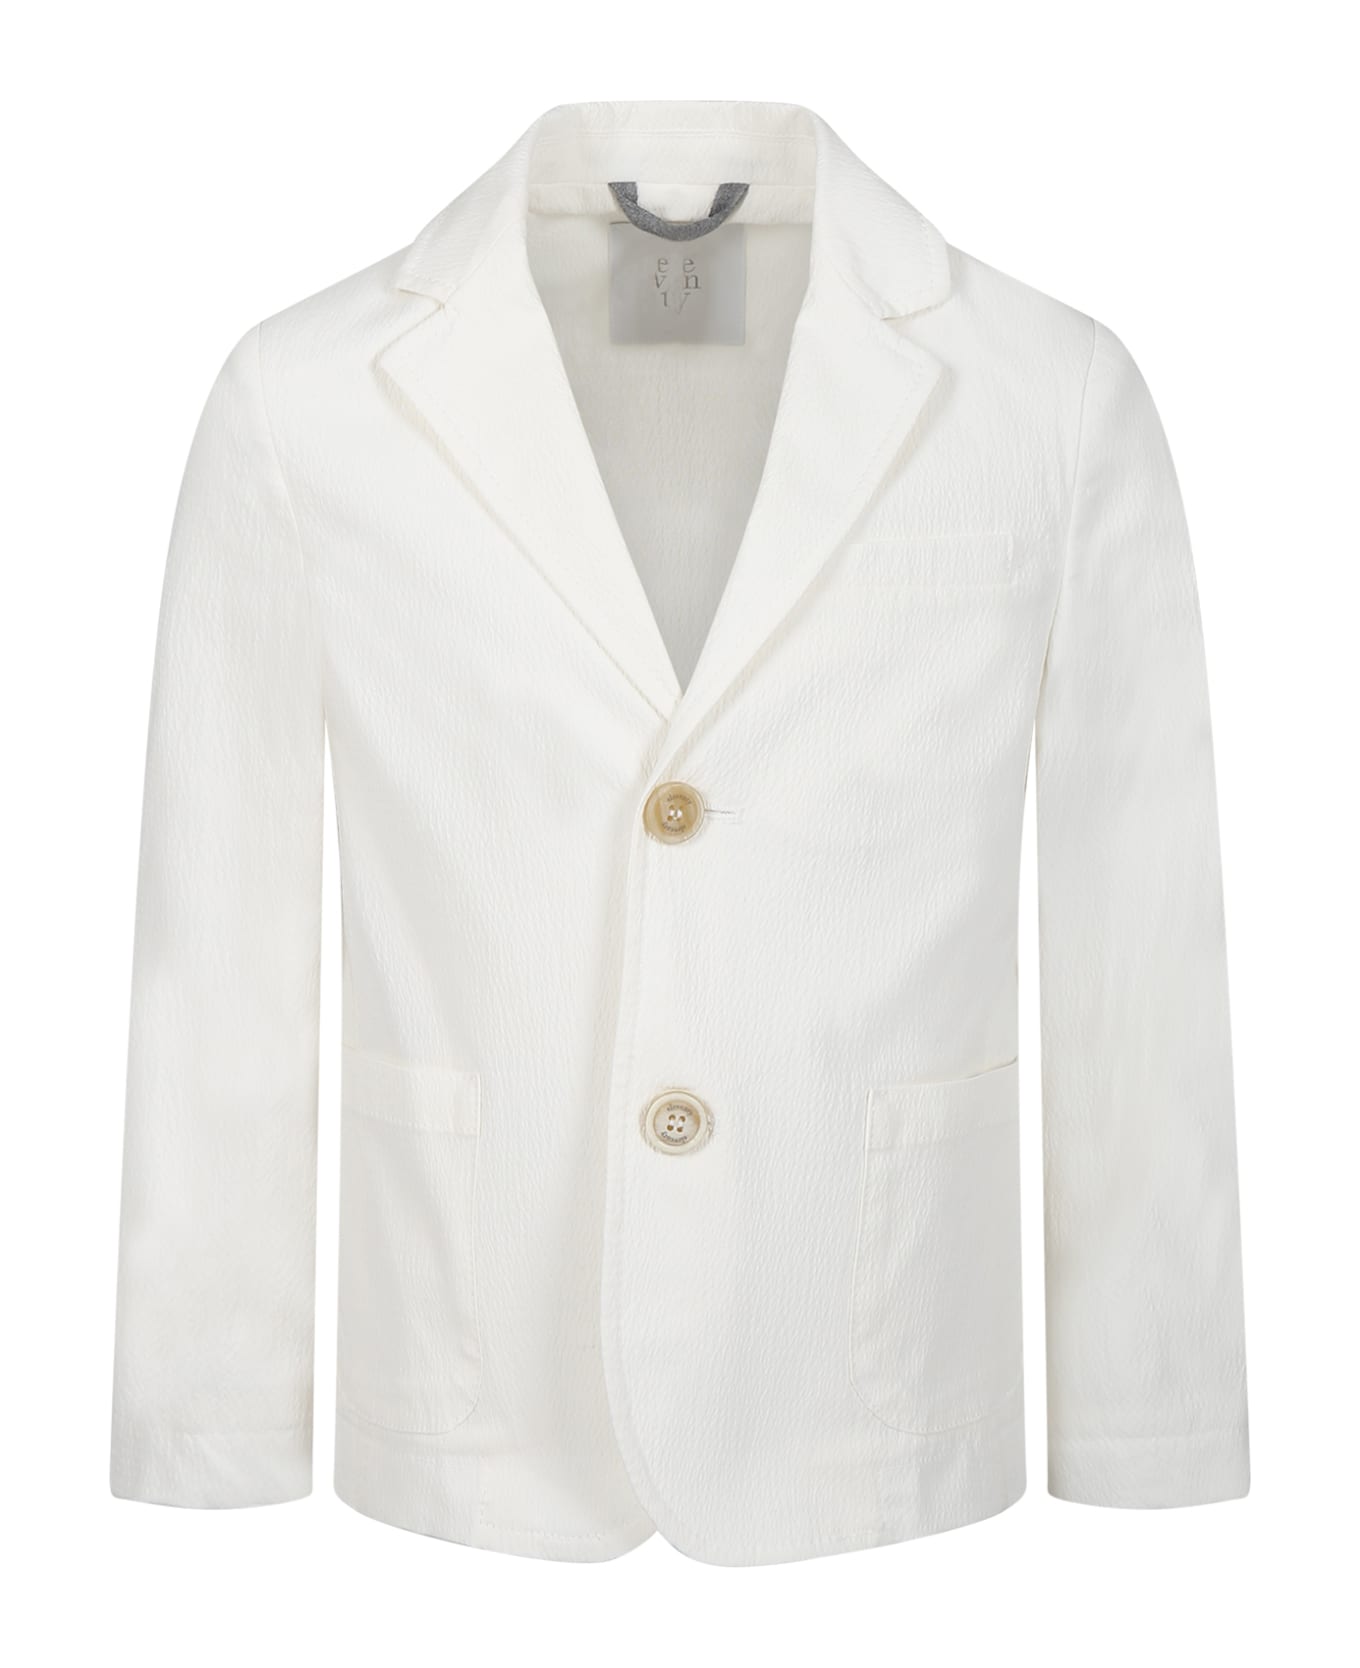 Eleventy White Jacket For Boy - White